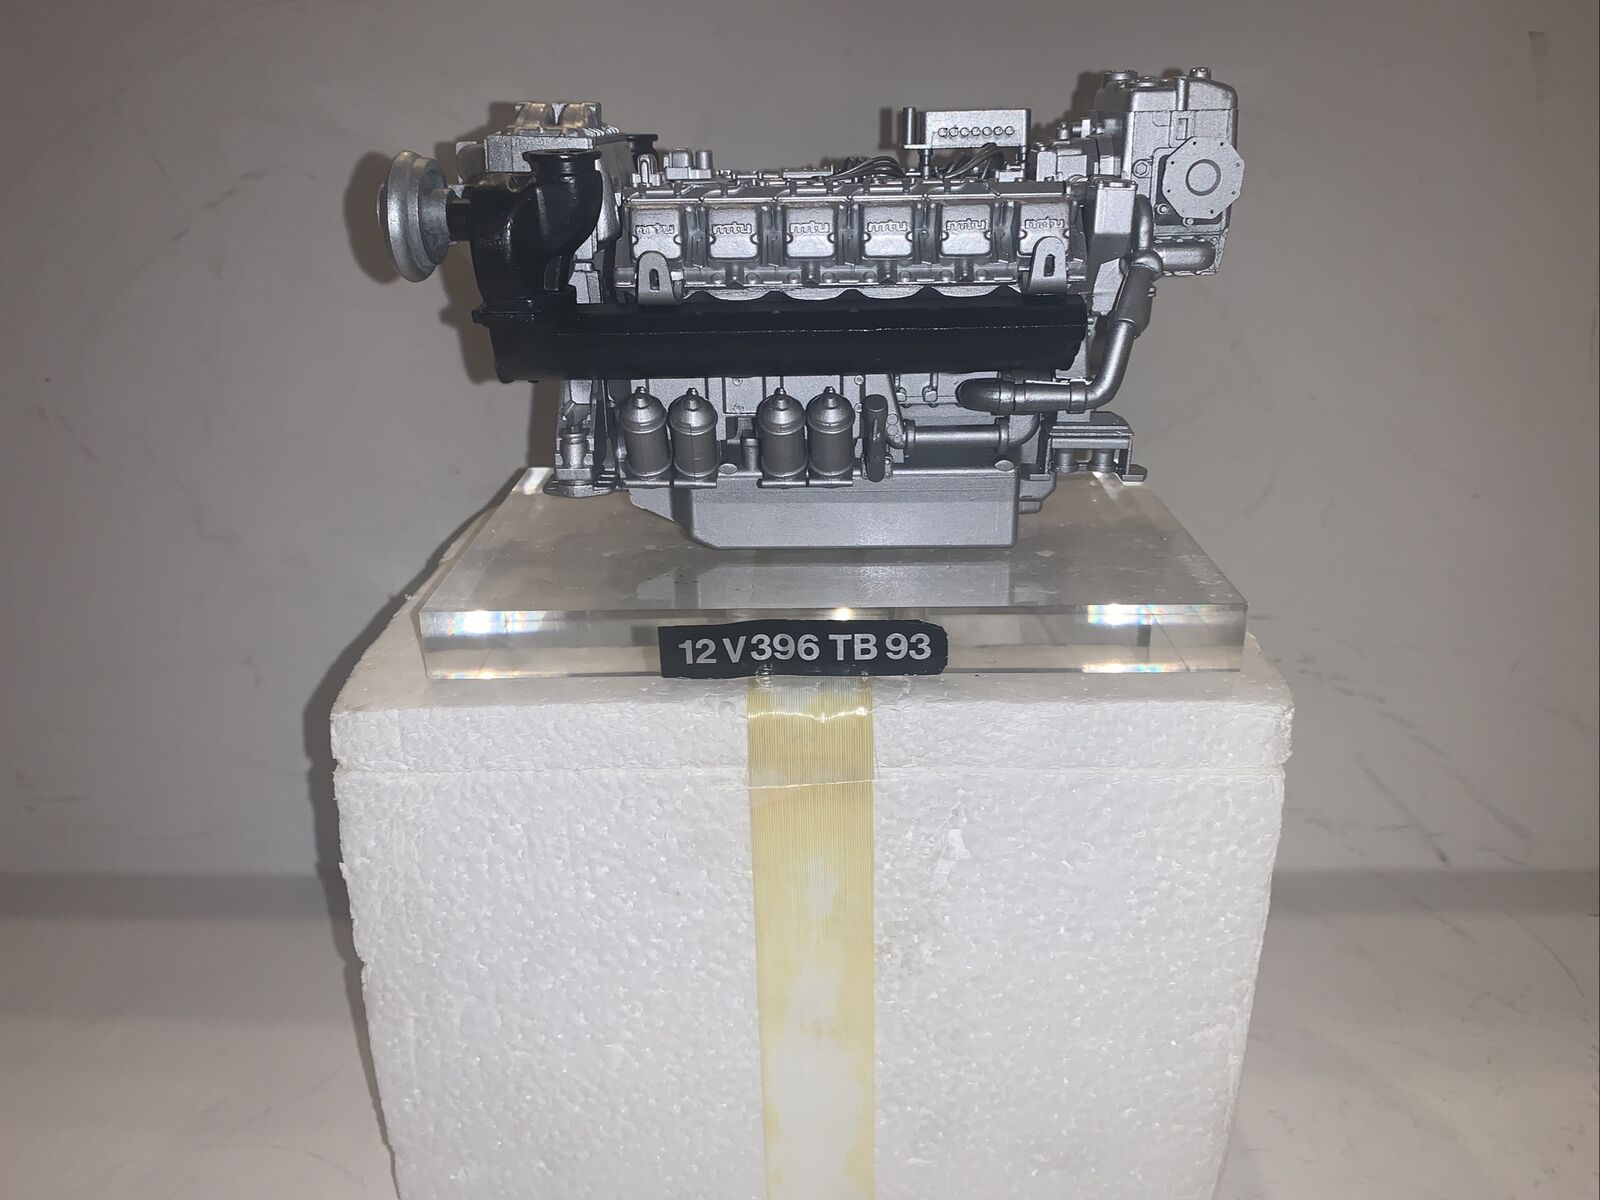 Conrad Nzg Mtu 12 Cylinder Diesel Engine